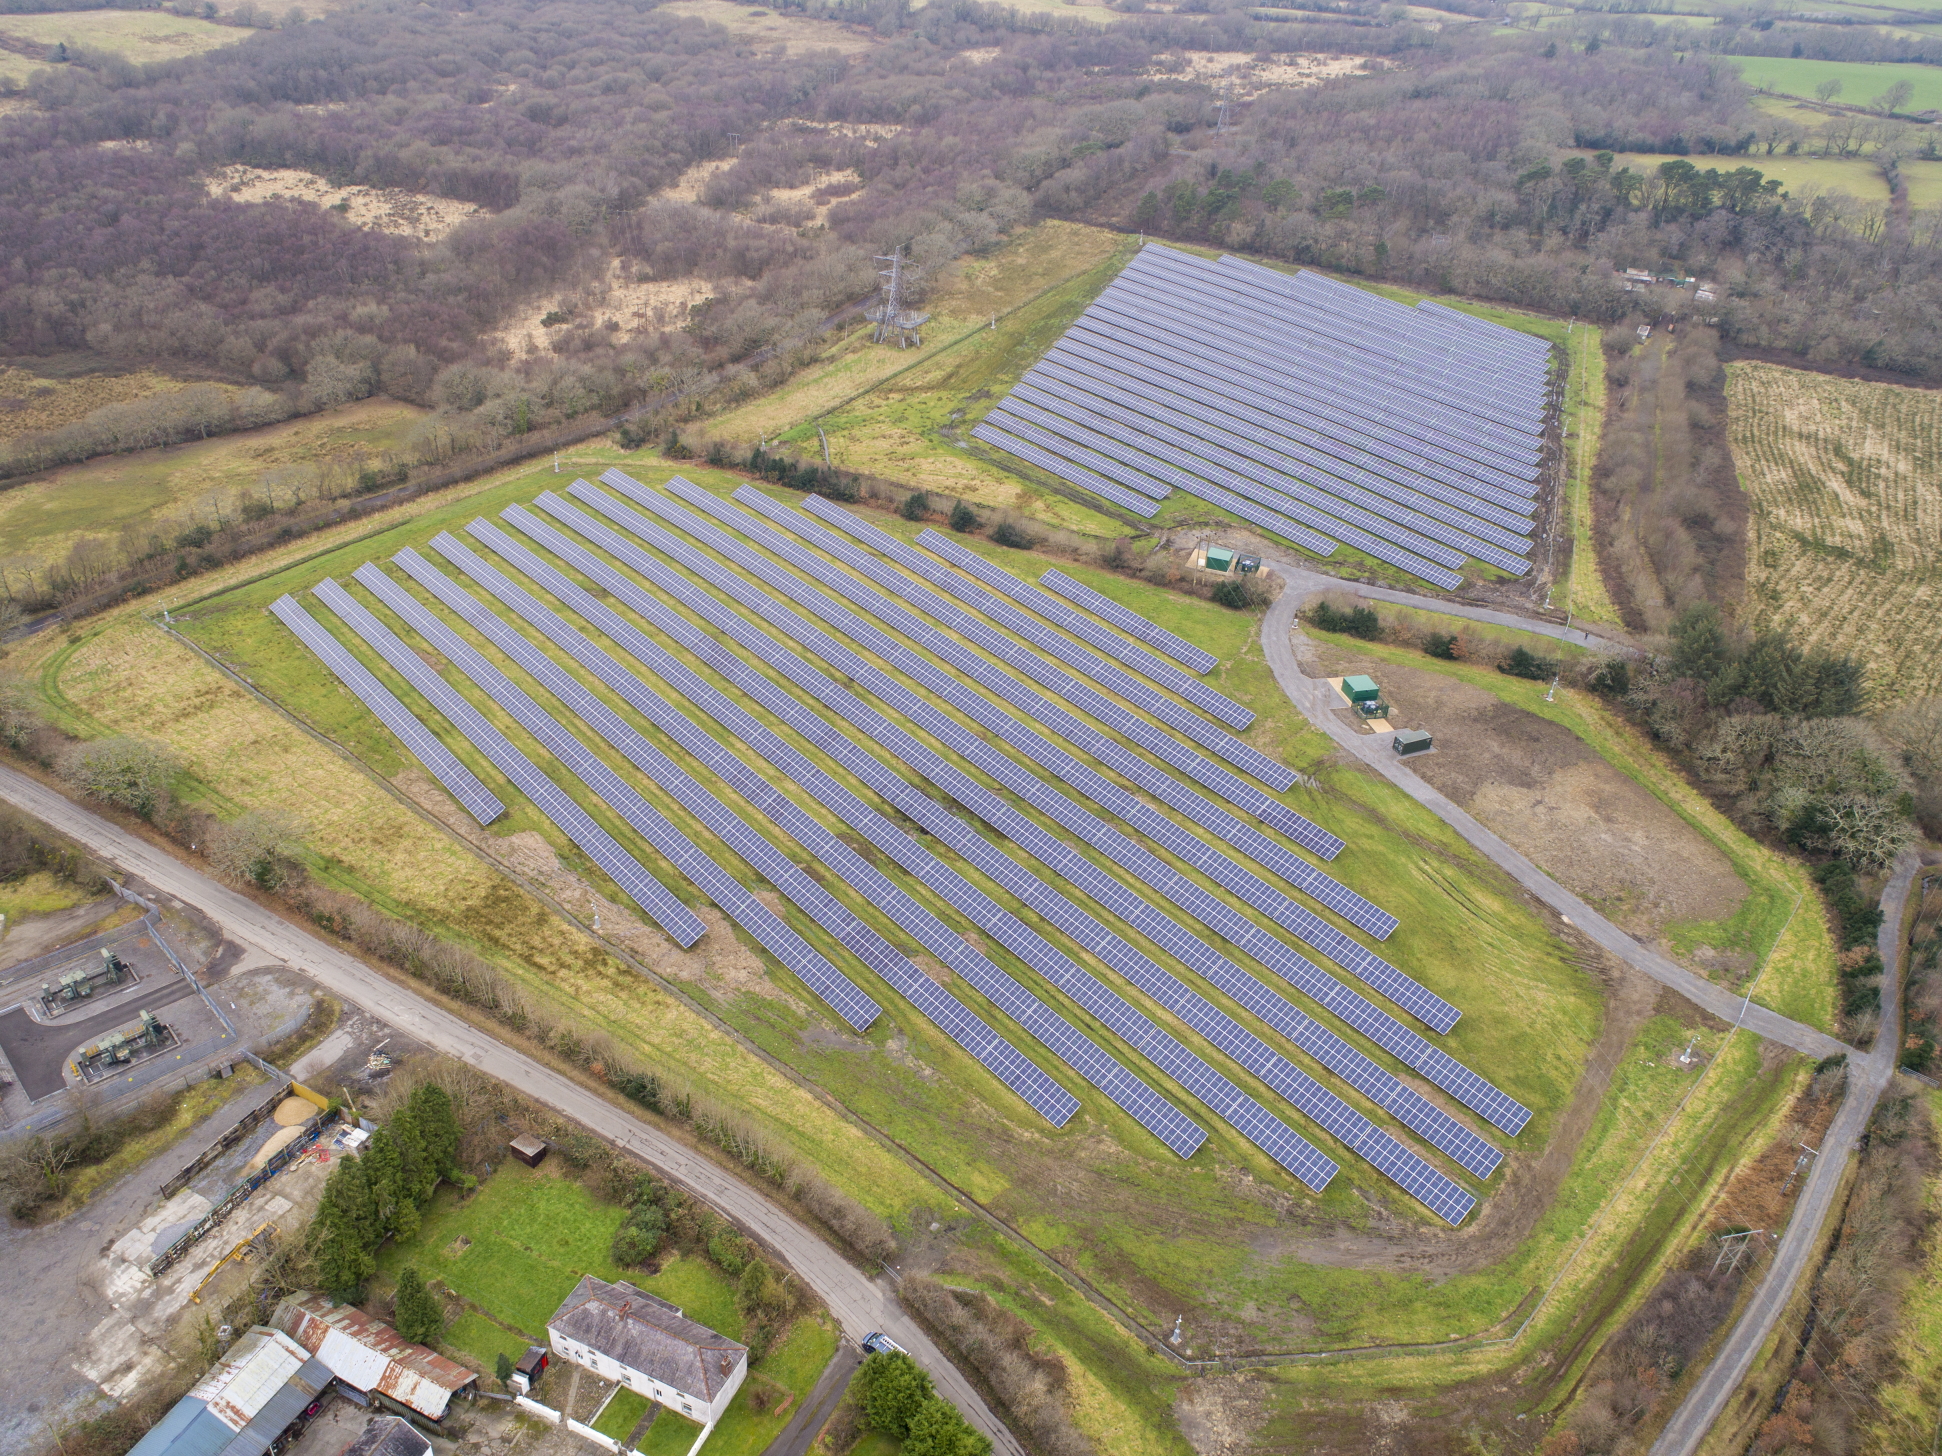 Swansea Bay Solar Farm Both Fields Complete